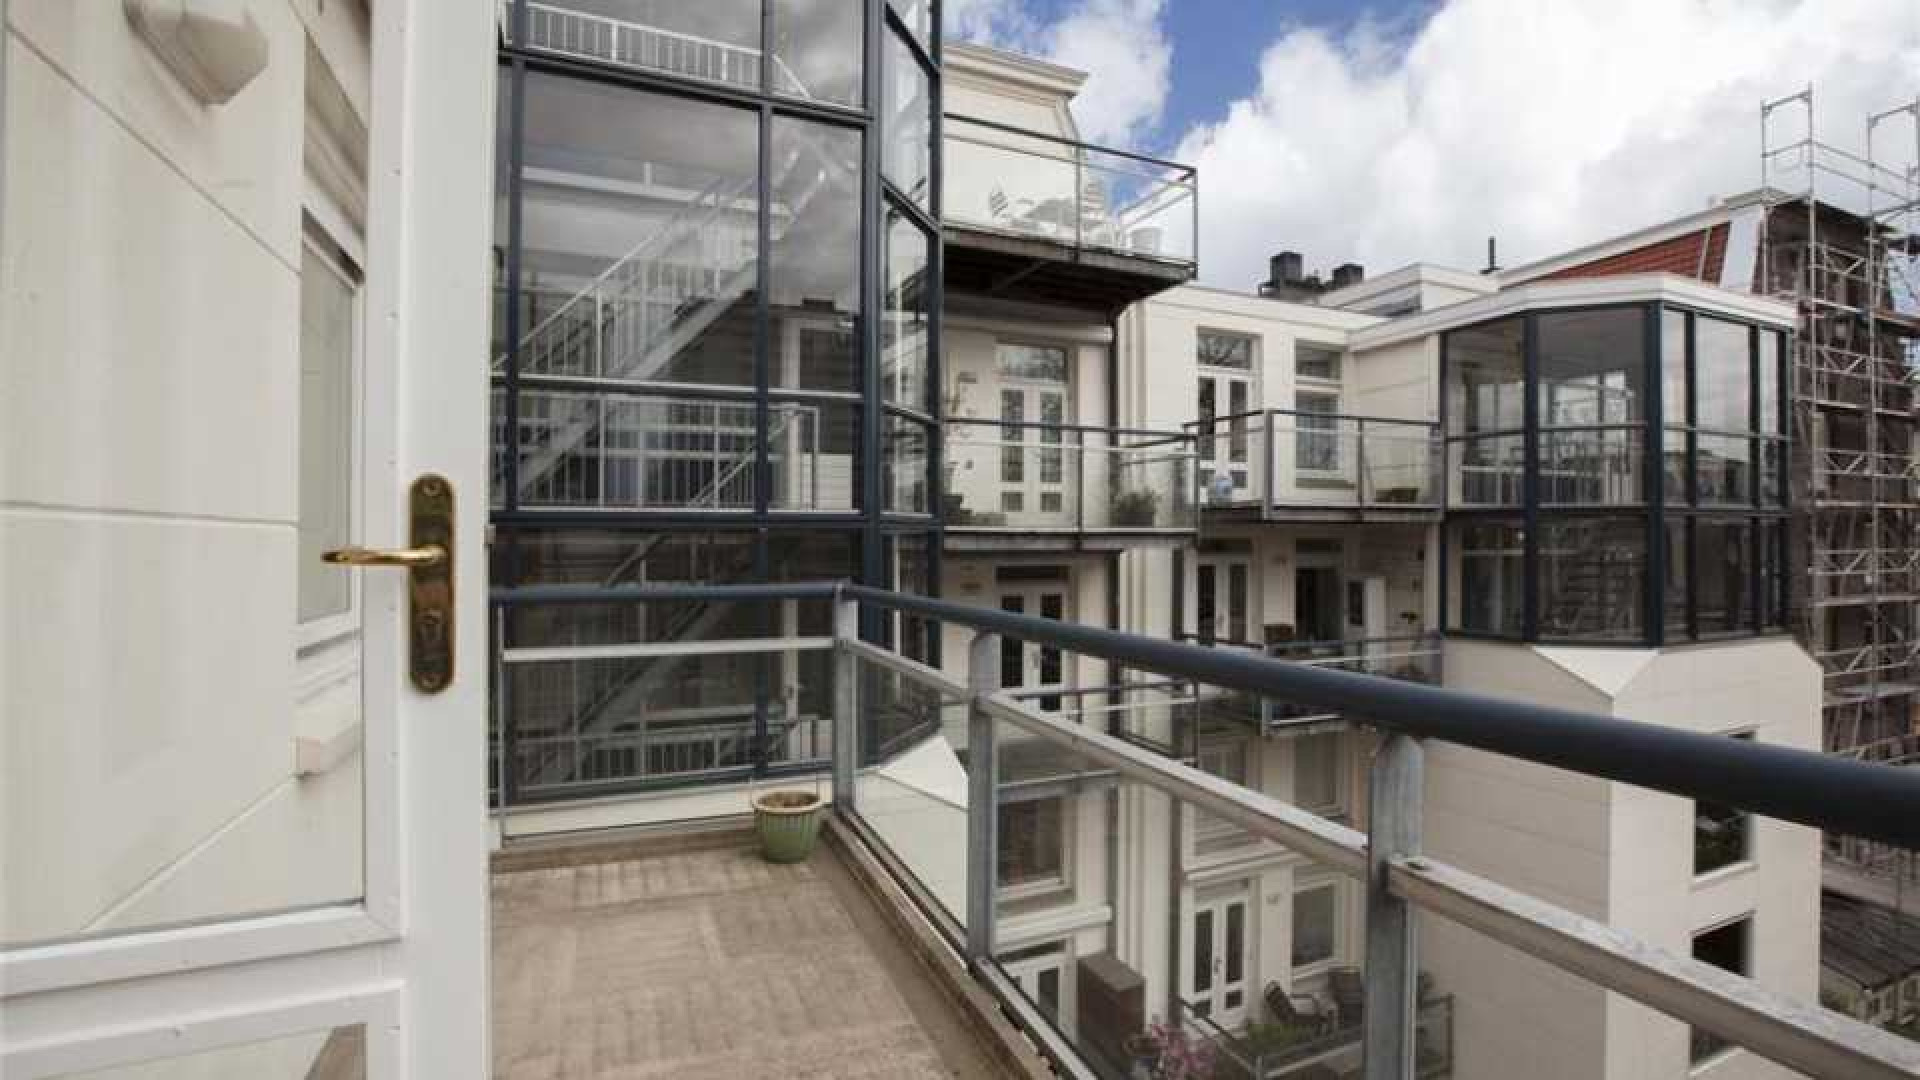 Jamai huurt luxe appartement in centrum van Amsterdam. Zie foto's 8